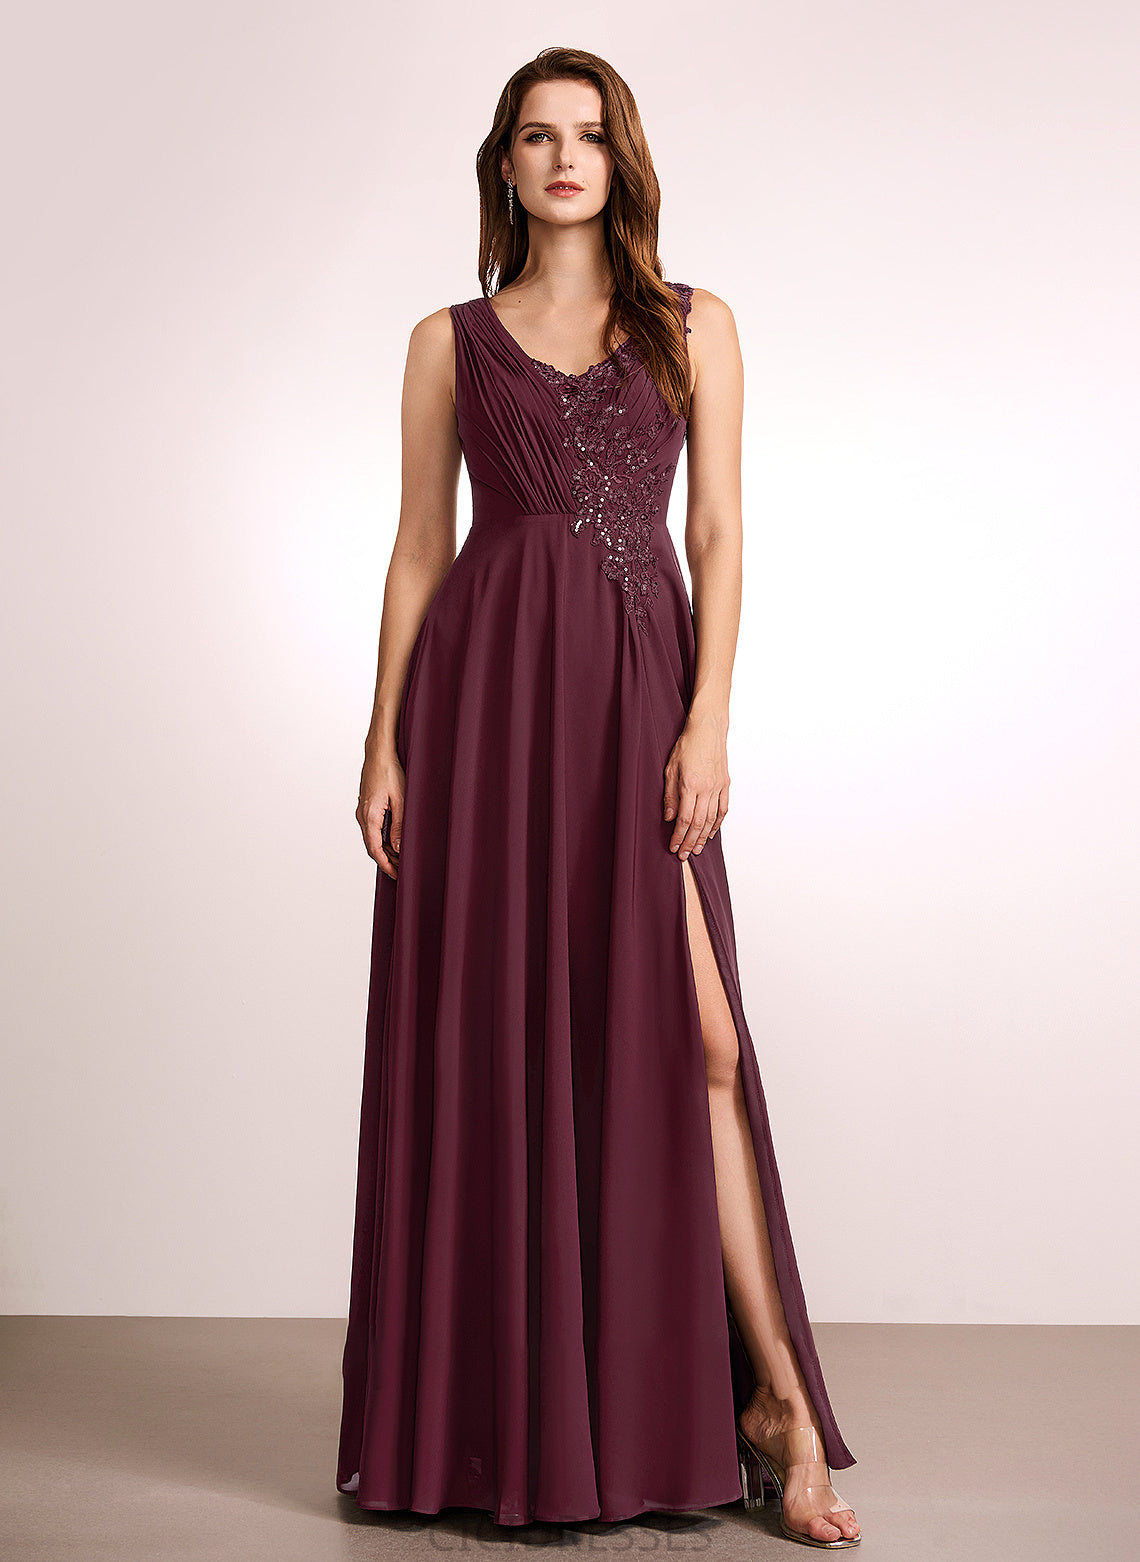 Fabric Neckline Length A-Line Lace Floor-Length Embellishment Silhouette V-neck Karla Floor Length A-Line/Princess Bridesmaid Dresses